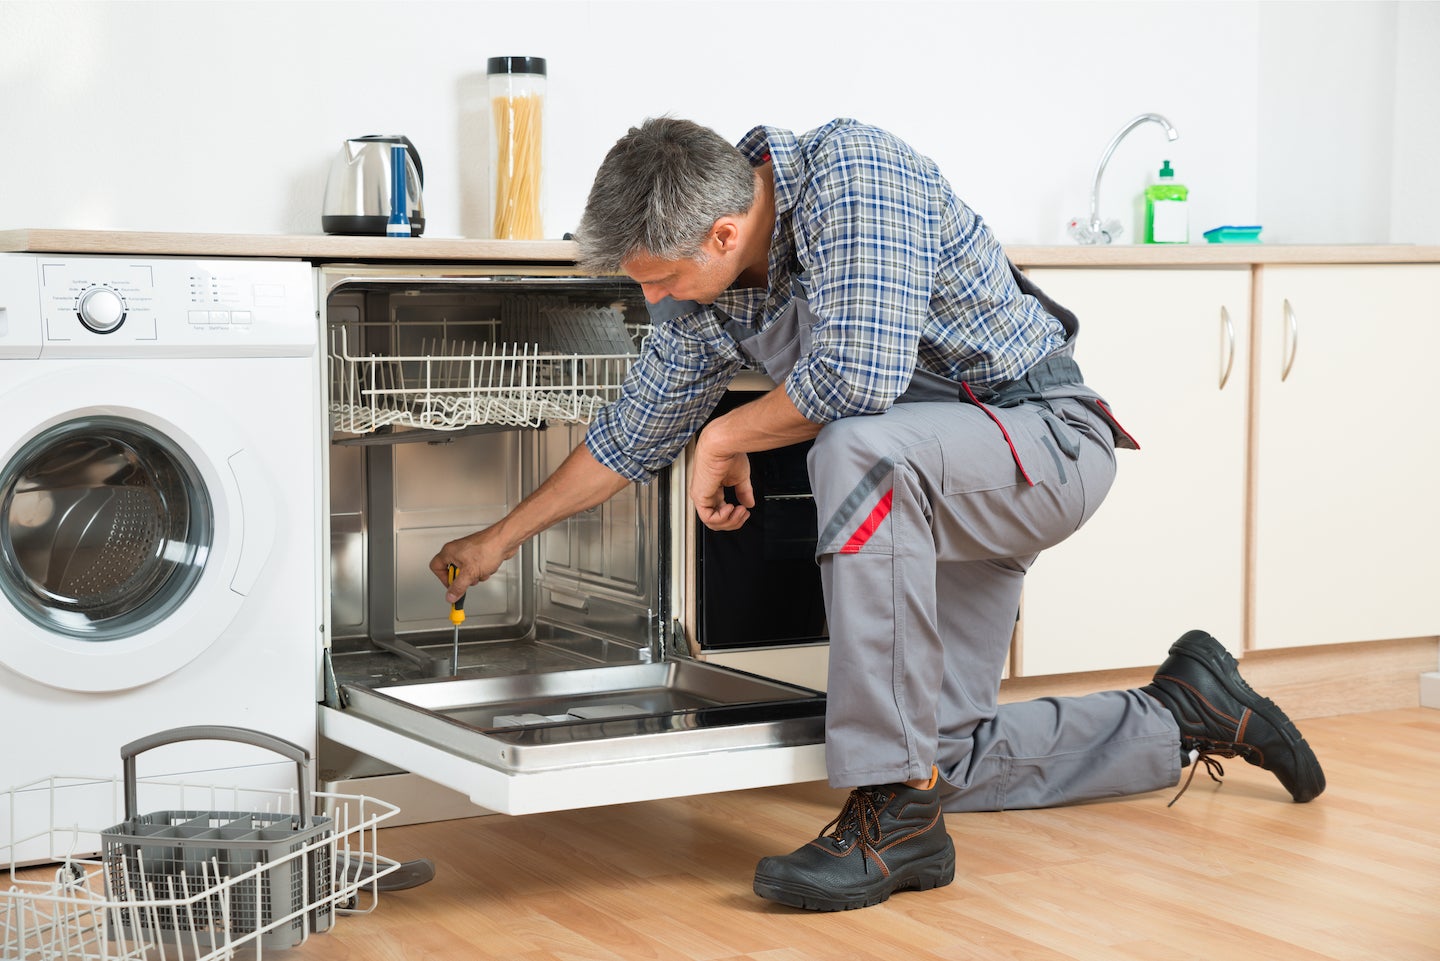 Repairman reviews dishwasher repairs with Atlanta couple.